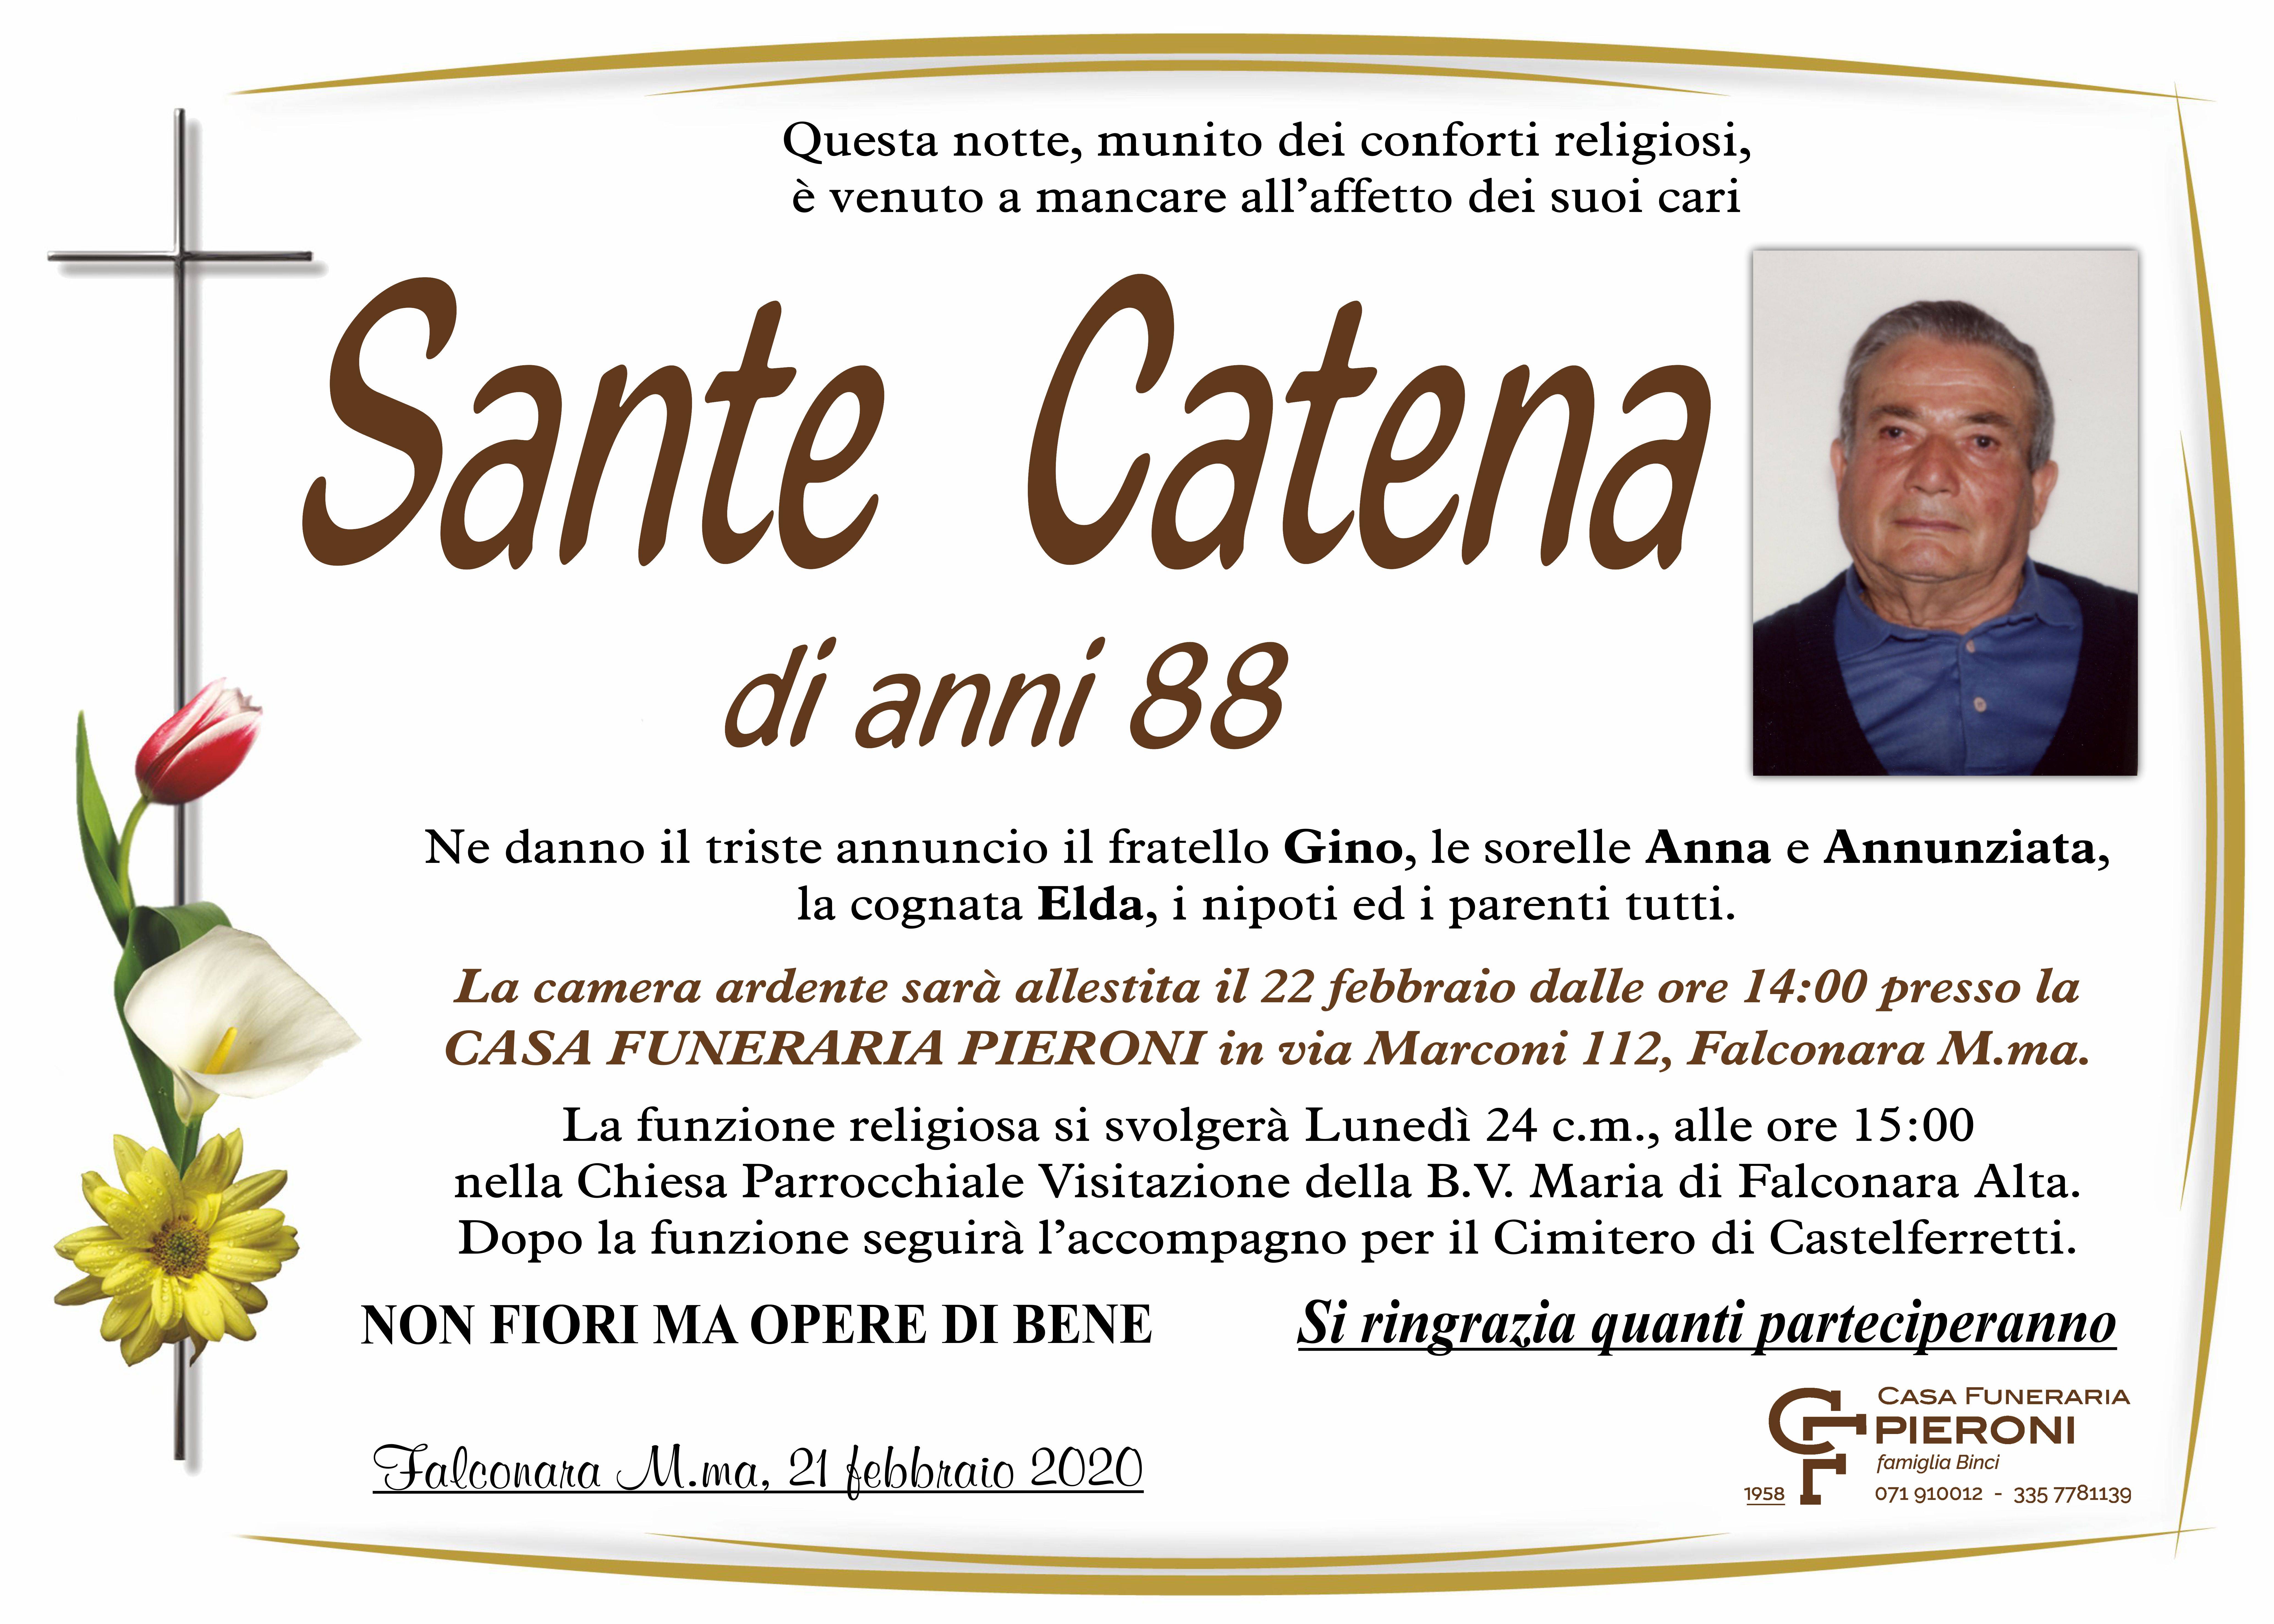 Sante Catena